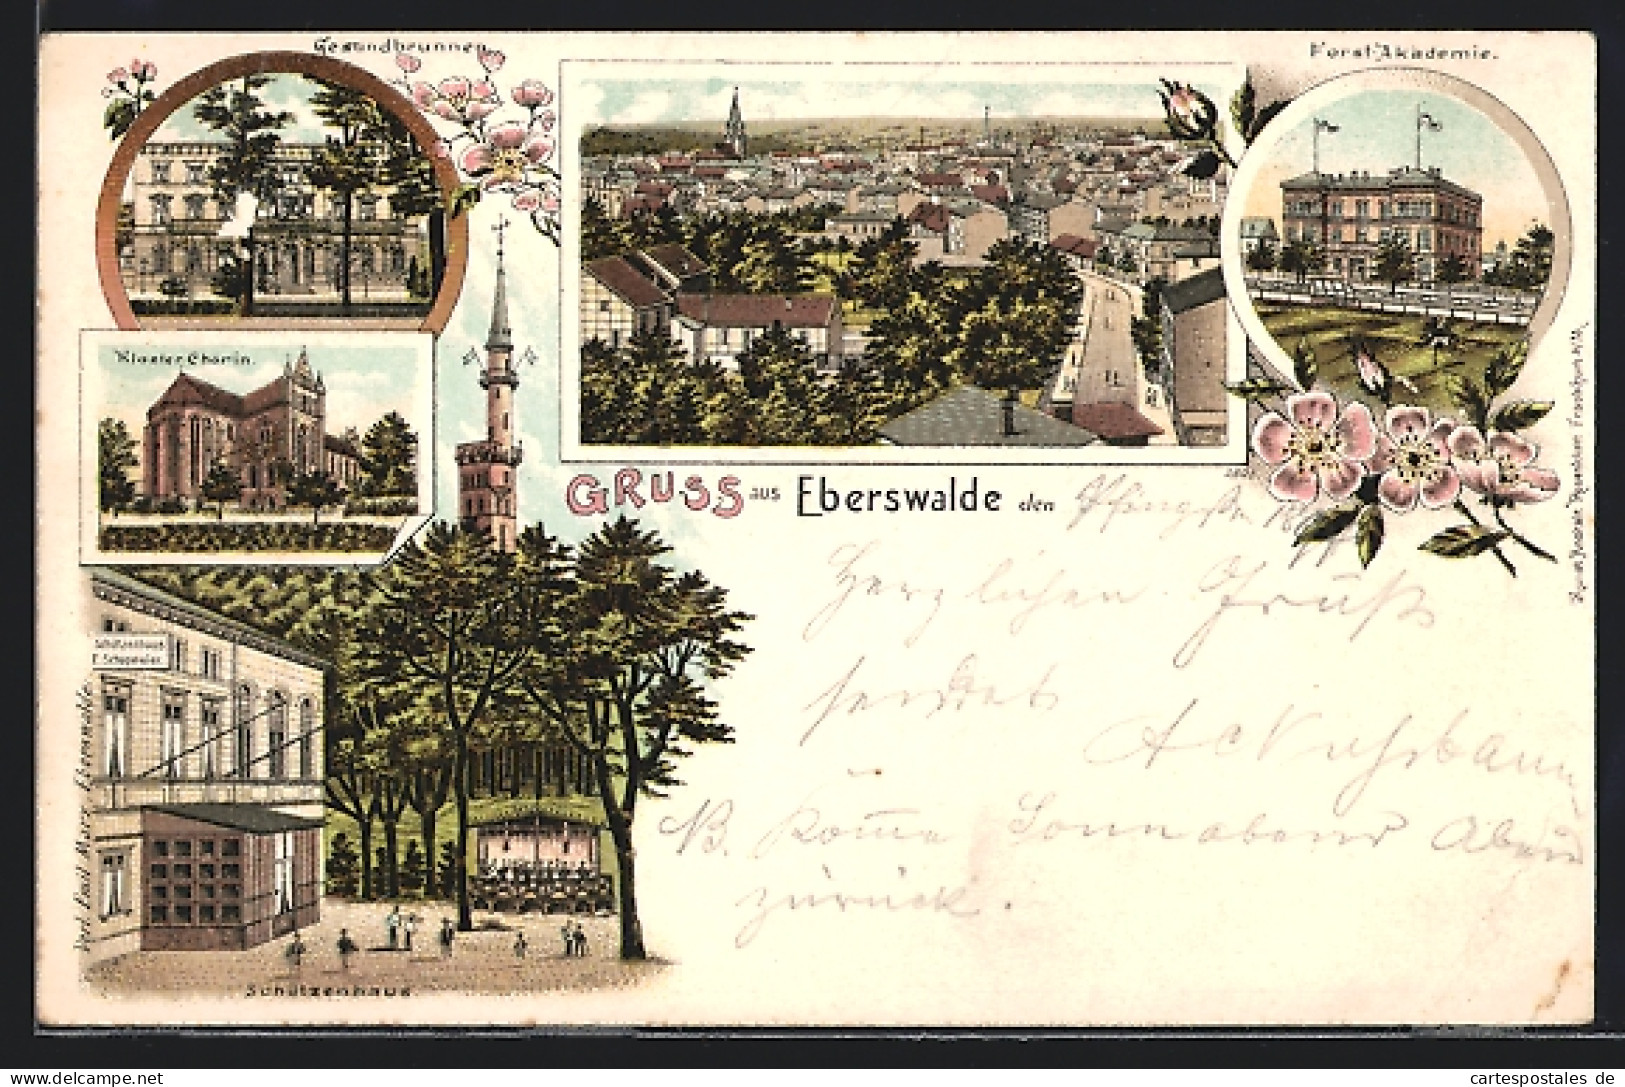 Lithographie Eberswalde, Gesundbrunnen, Kloster Chorin, Gasthof Schützenhaus, Forstakademie  - Forst